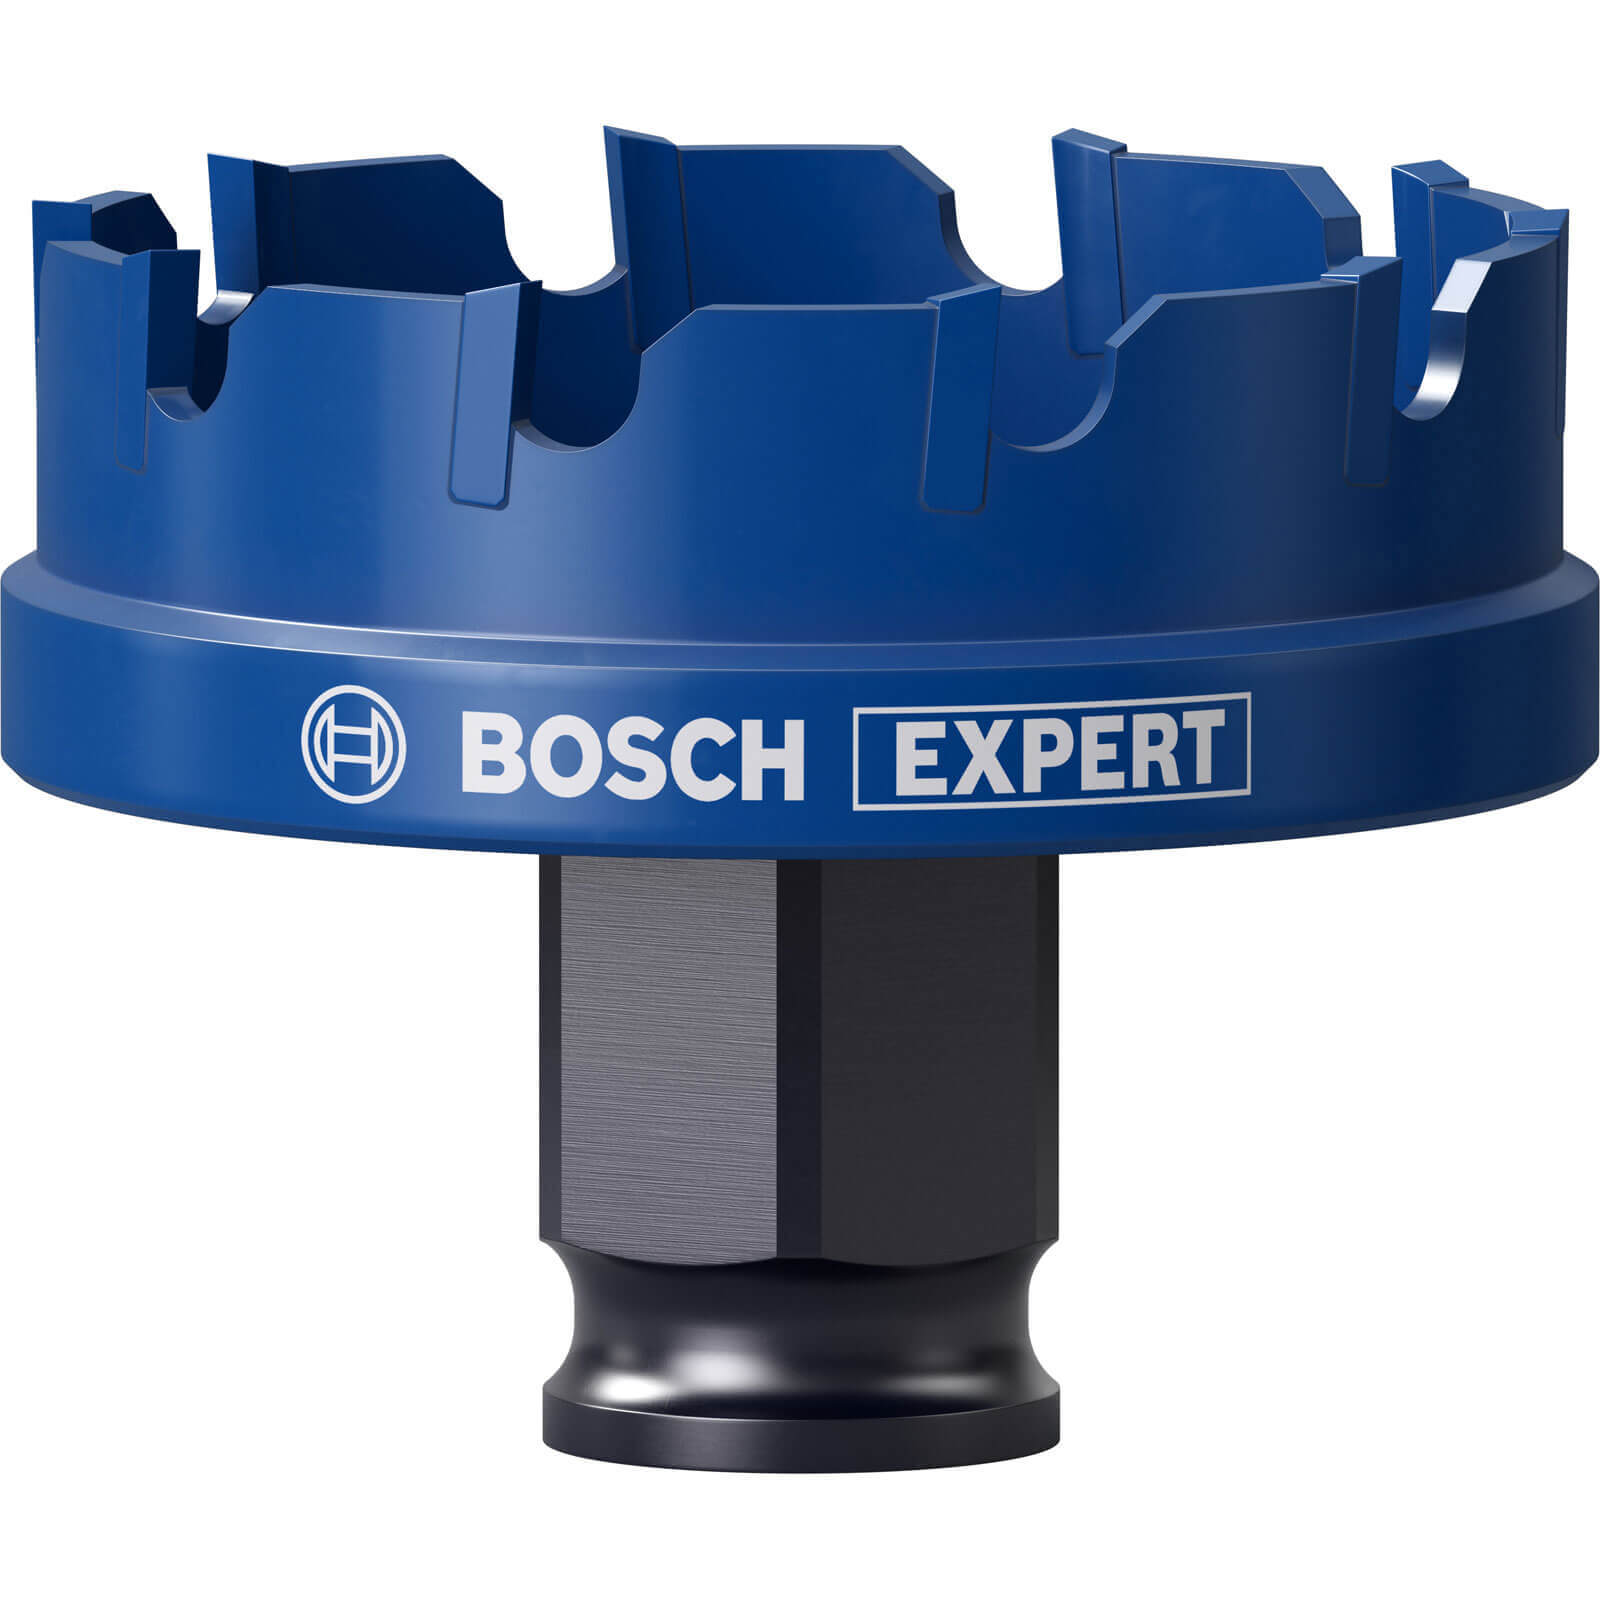 Bosch Expert Carbide Sheet Metal Hole Saw 51mm